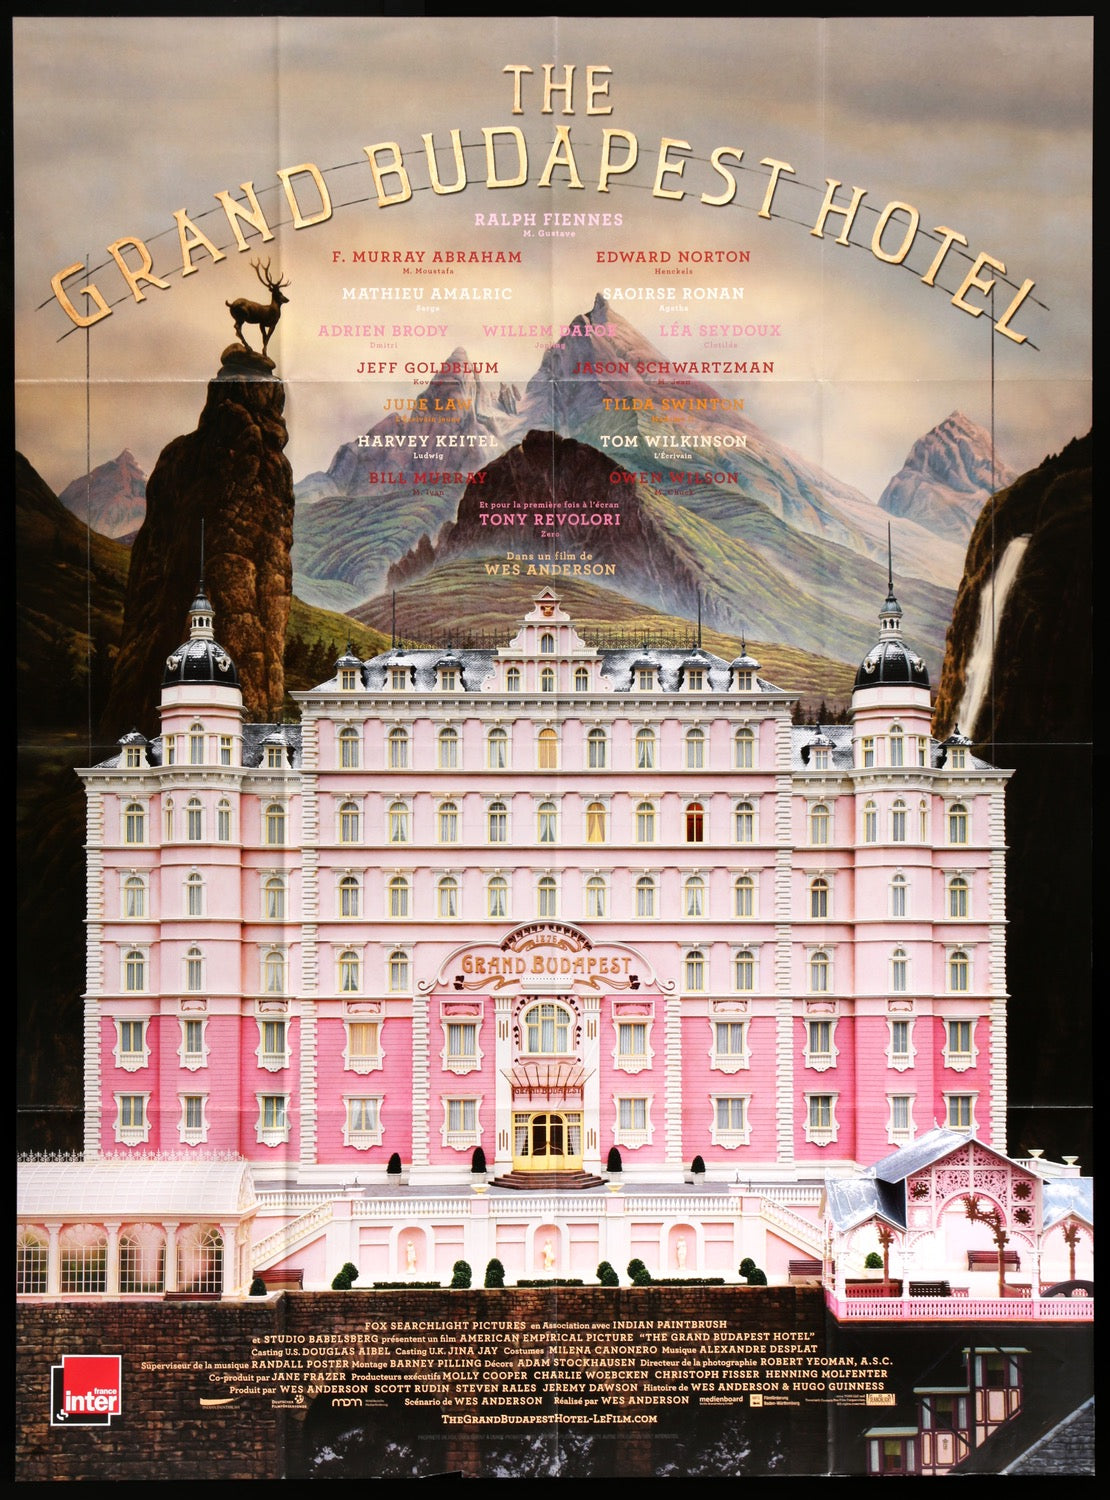 Grand Budapest Hotel (2014) original movie poster for sale at Original Film Art